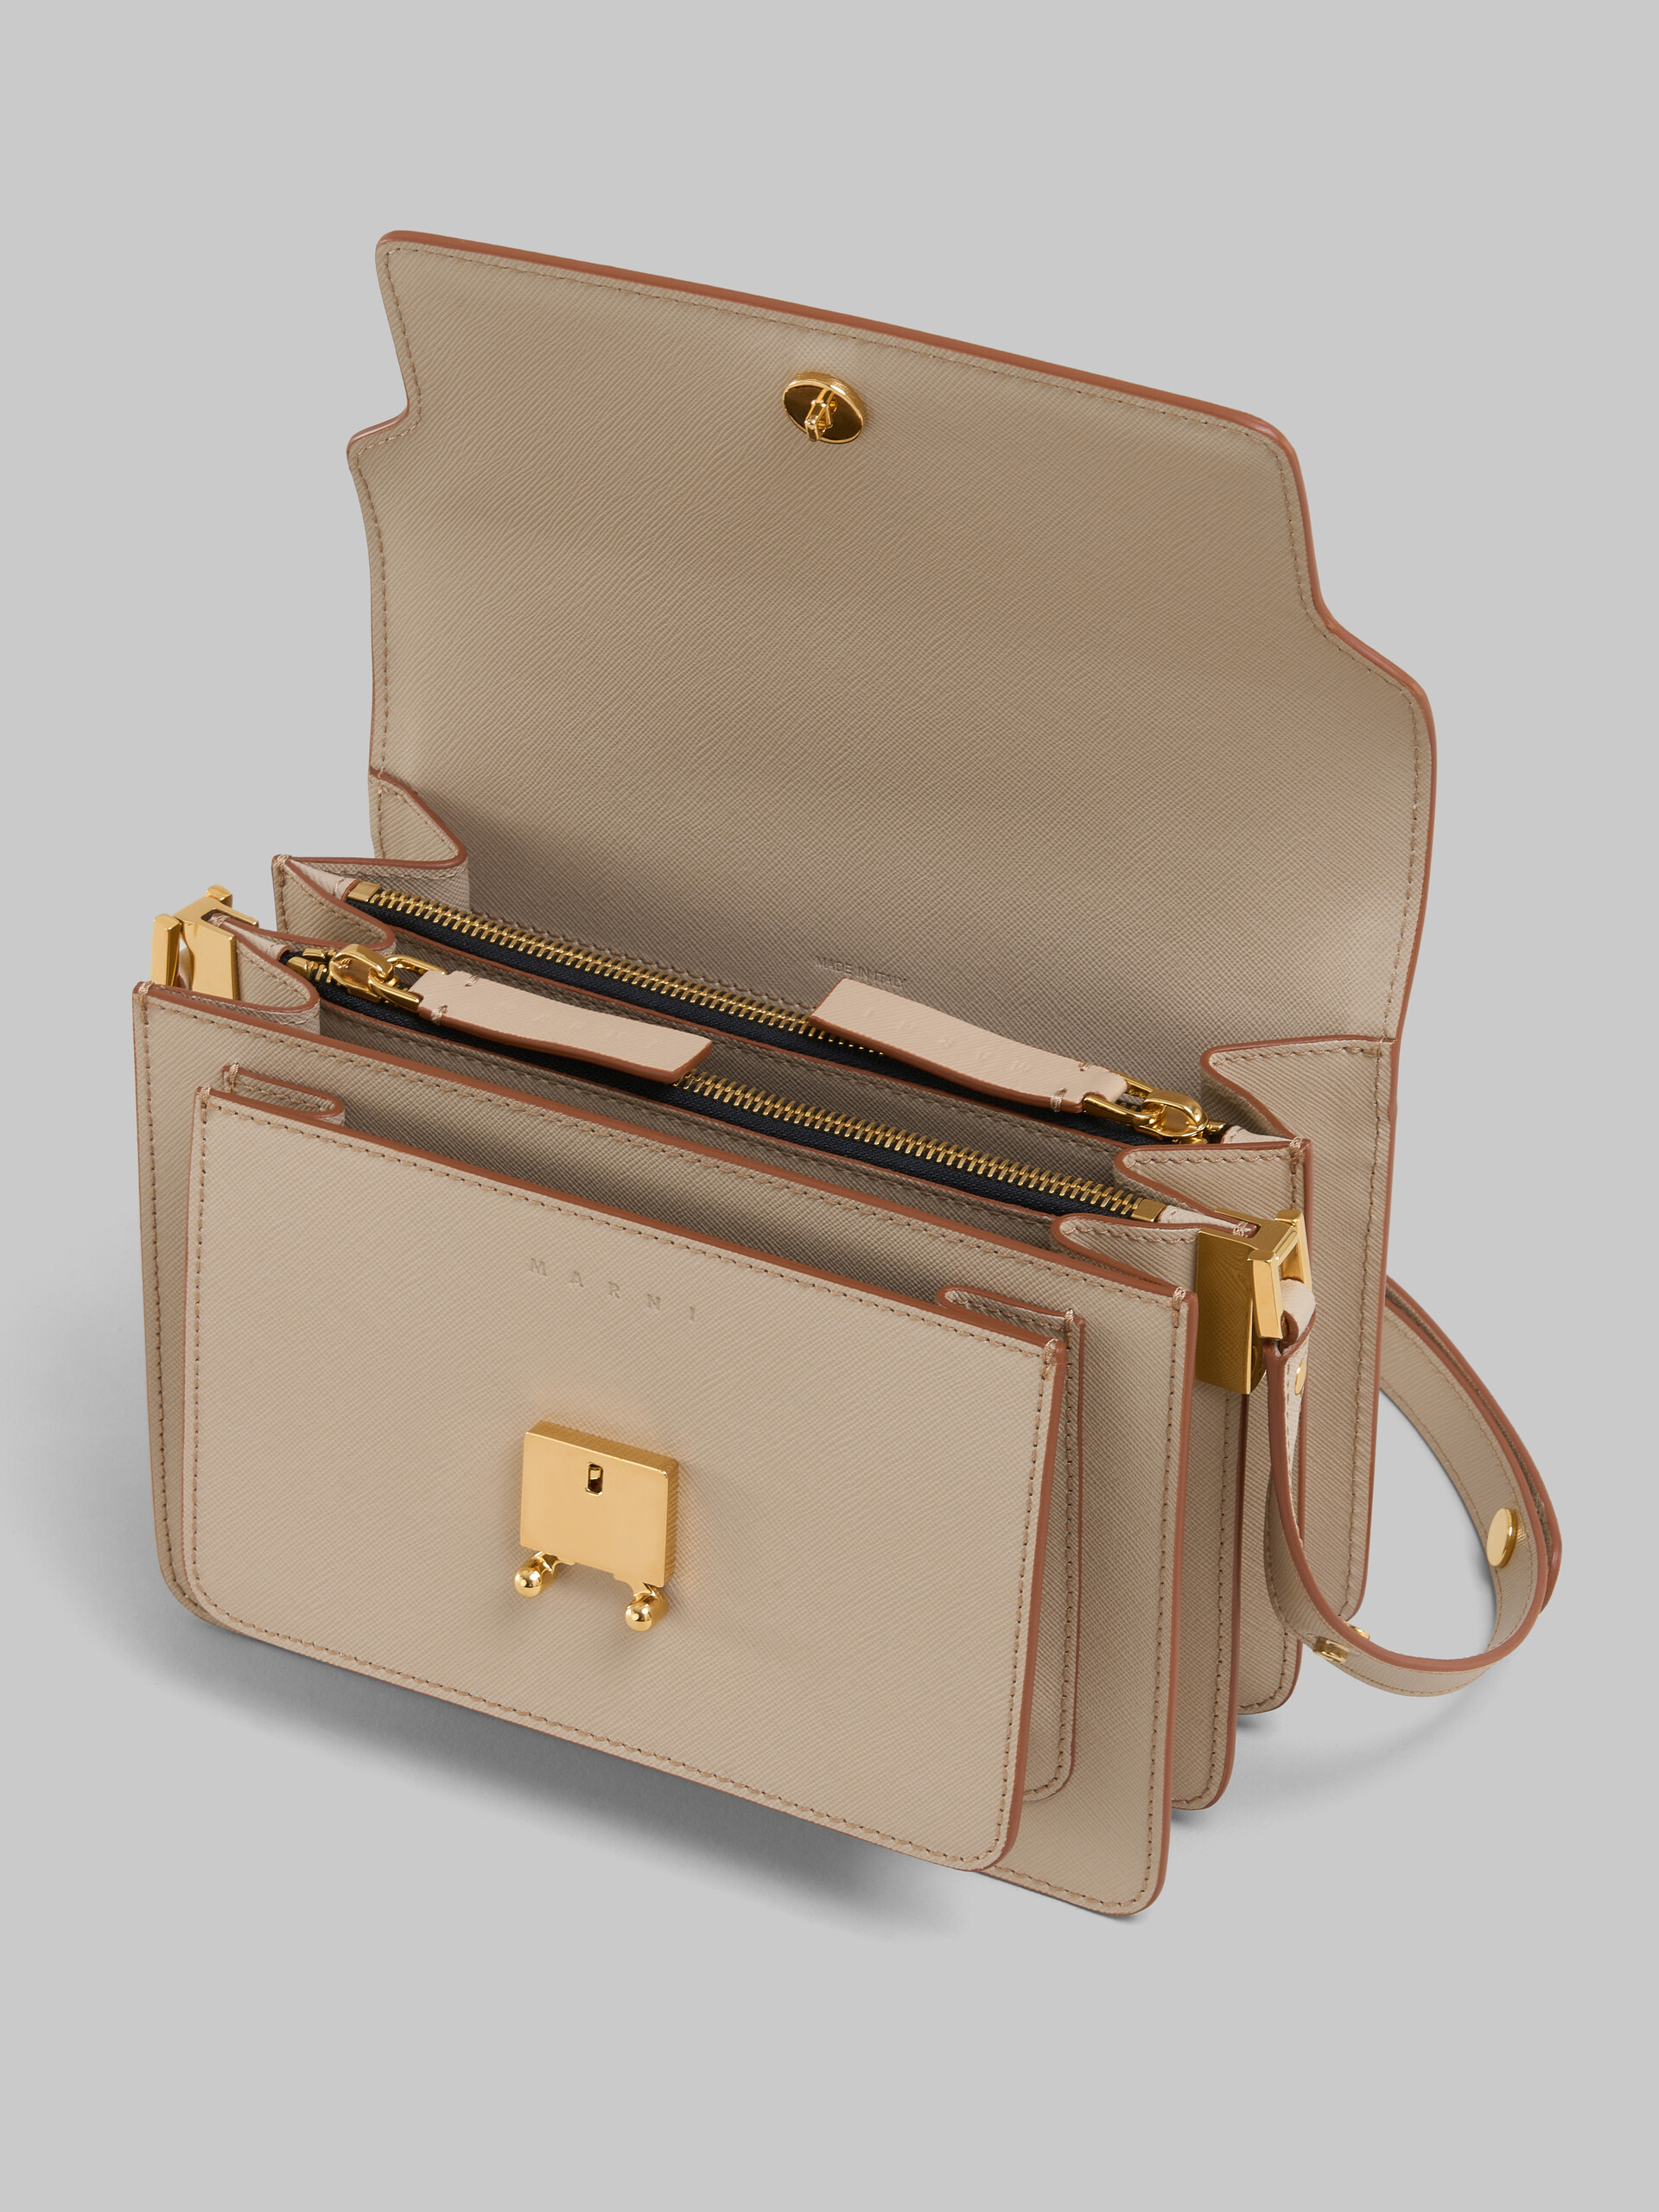 Trunk Bag Media in pelle saffiano beige - Borse a spalla - Image 4